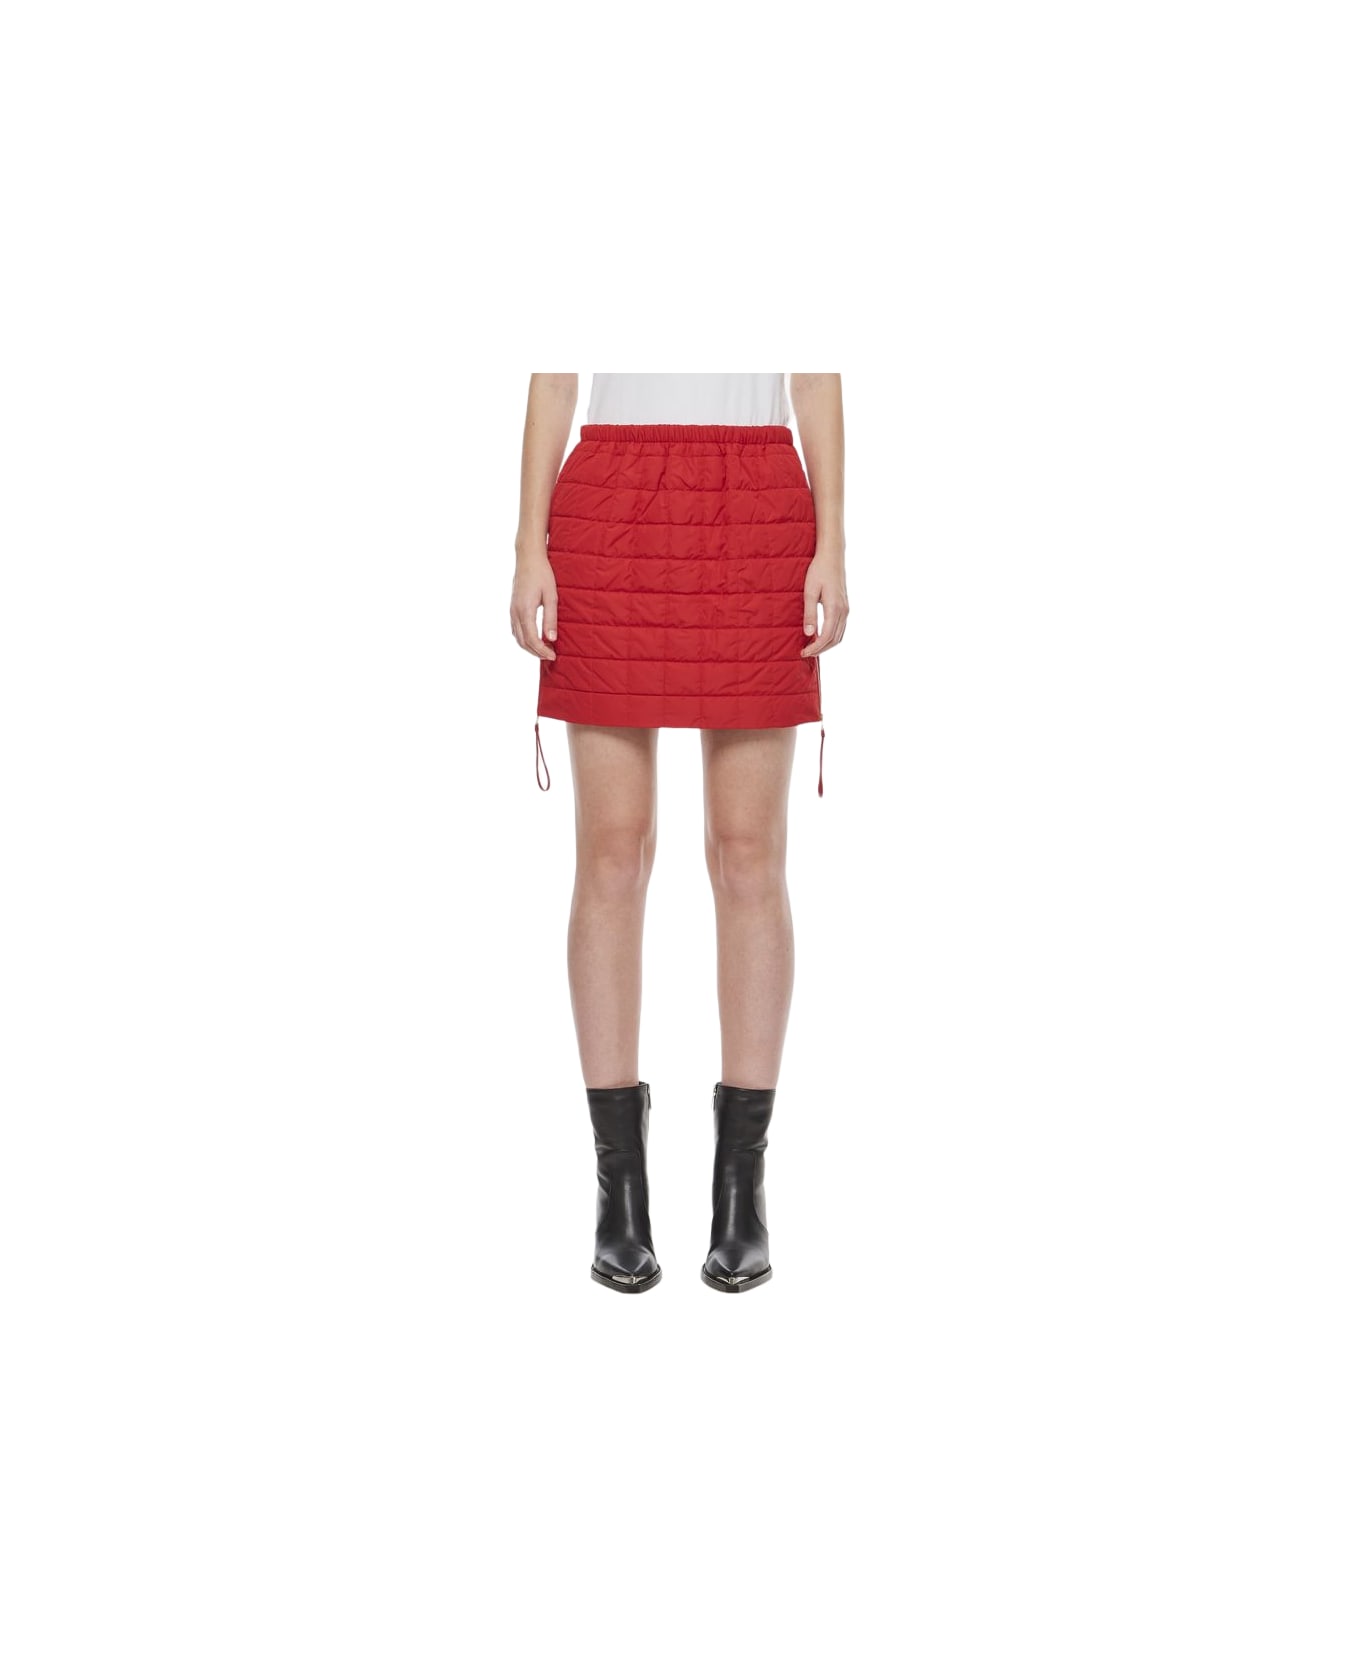 Max Mara Quilted Nylon Kim Miniskirt - Red